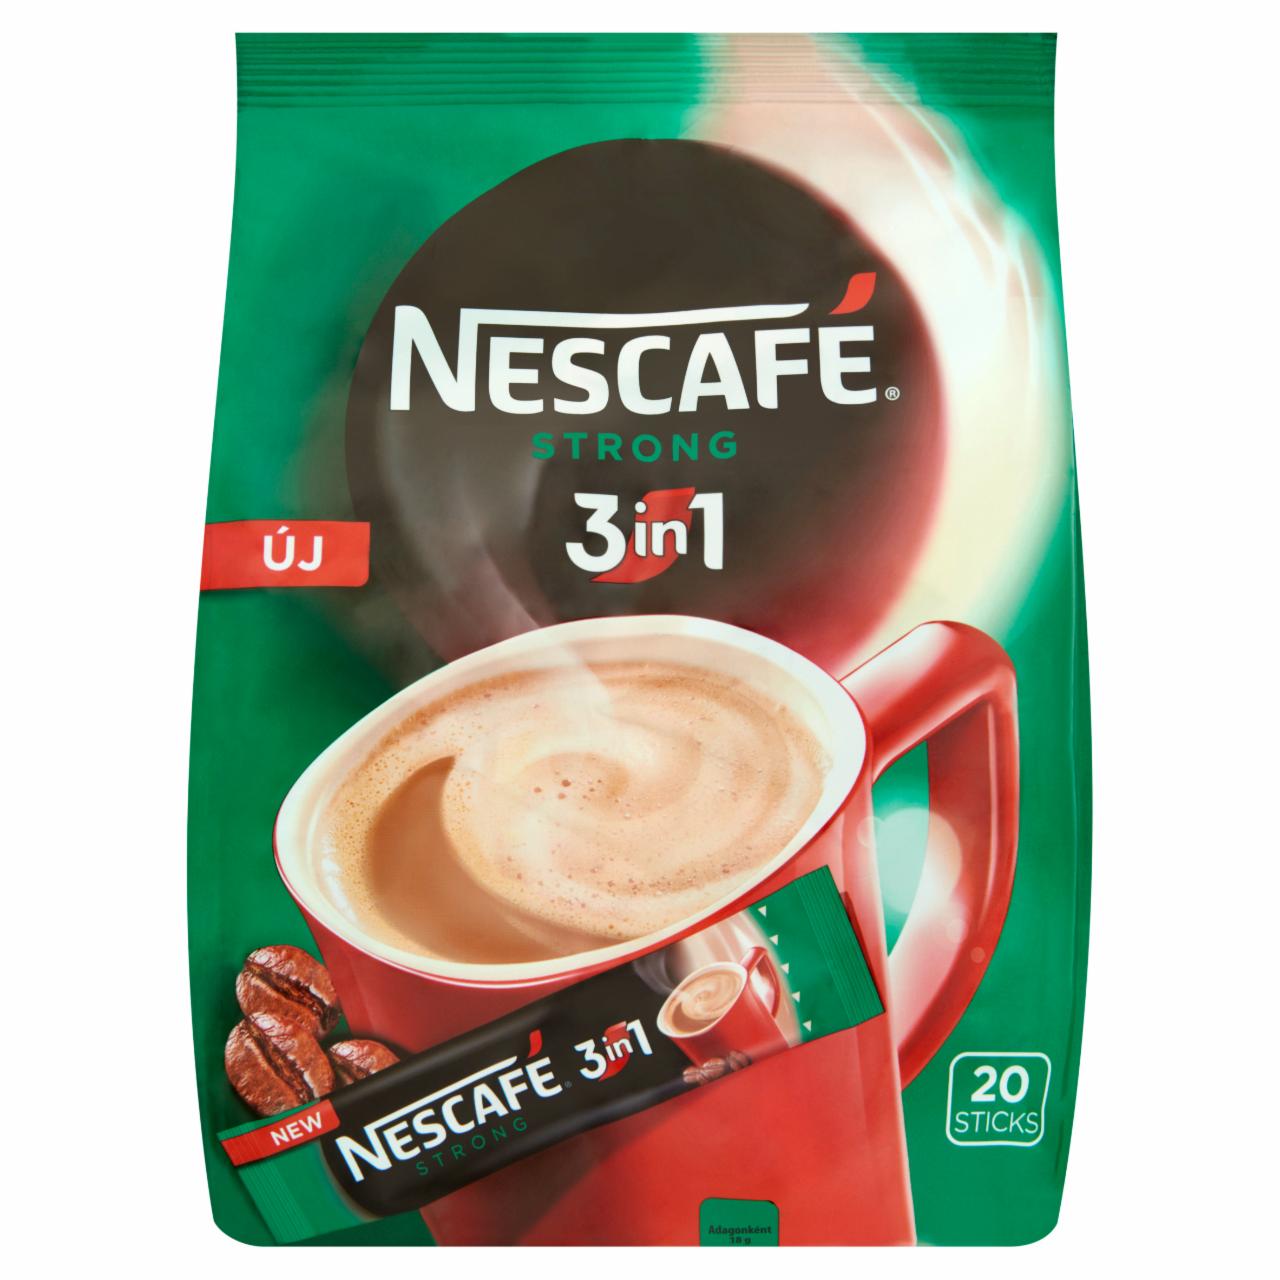 Képek - Nescafé 3in1 Strong azonnal oldódó kávéspecialitás 20 db 360 g